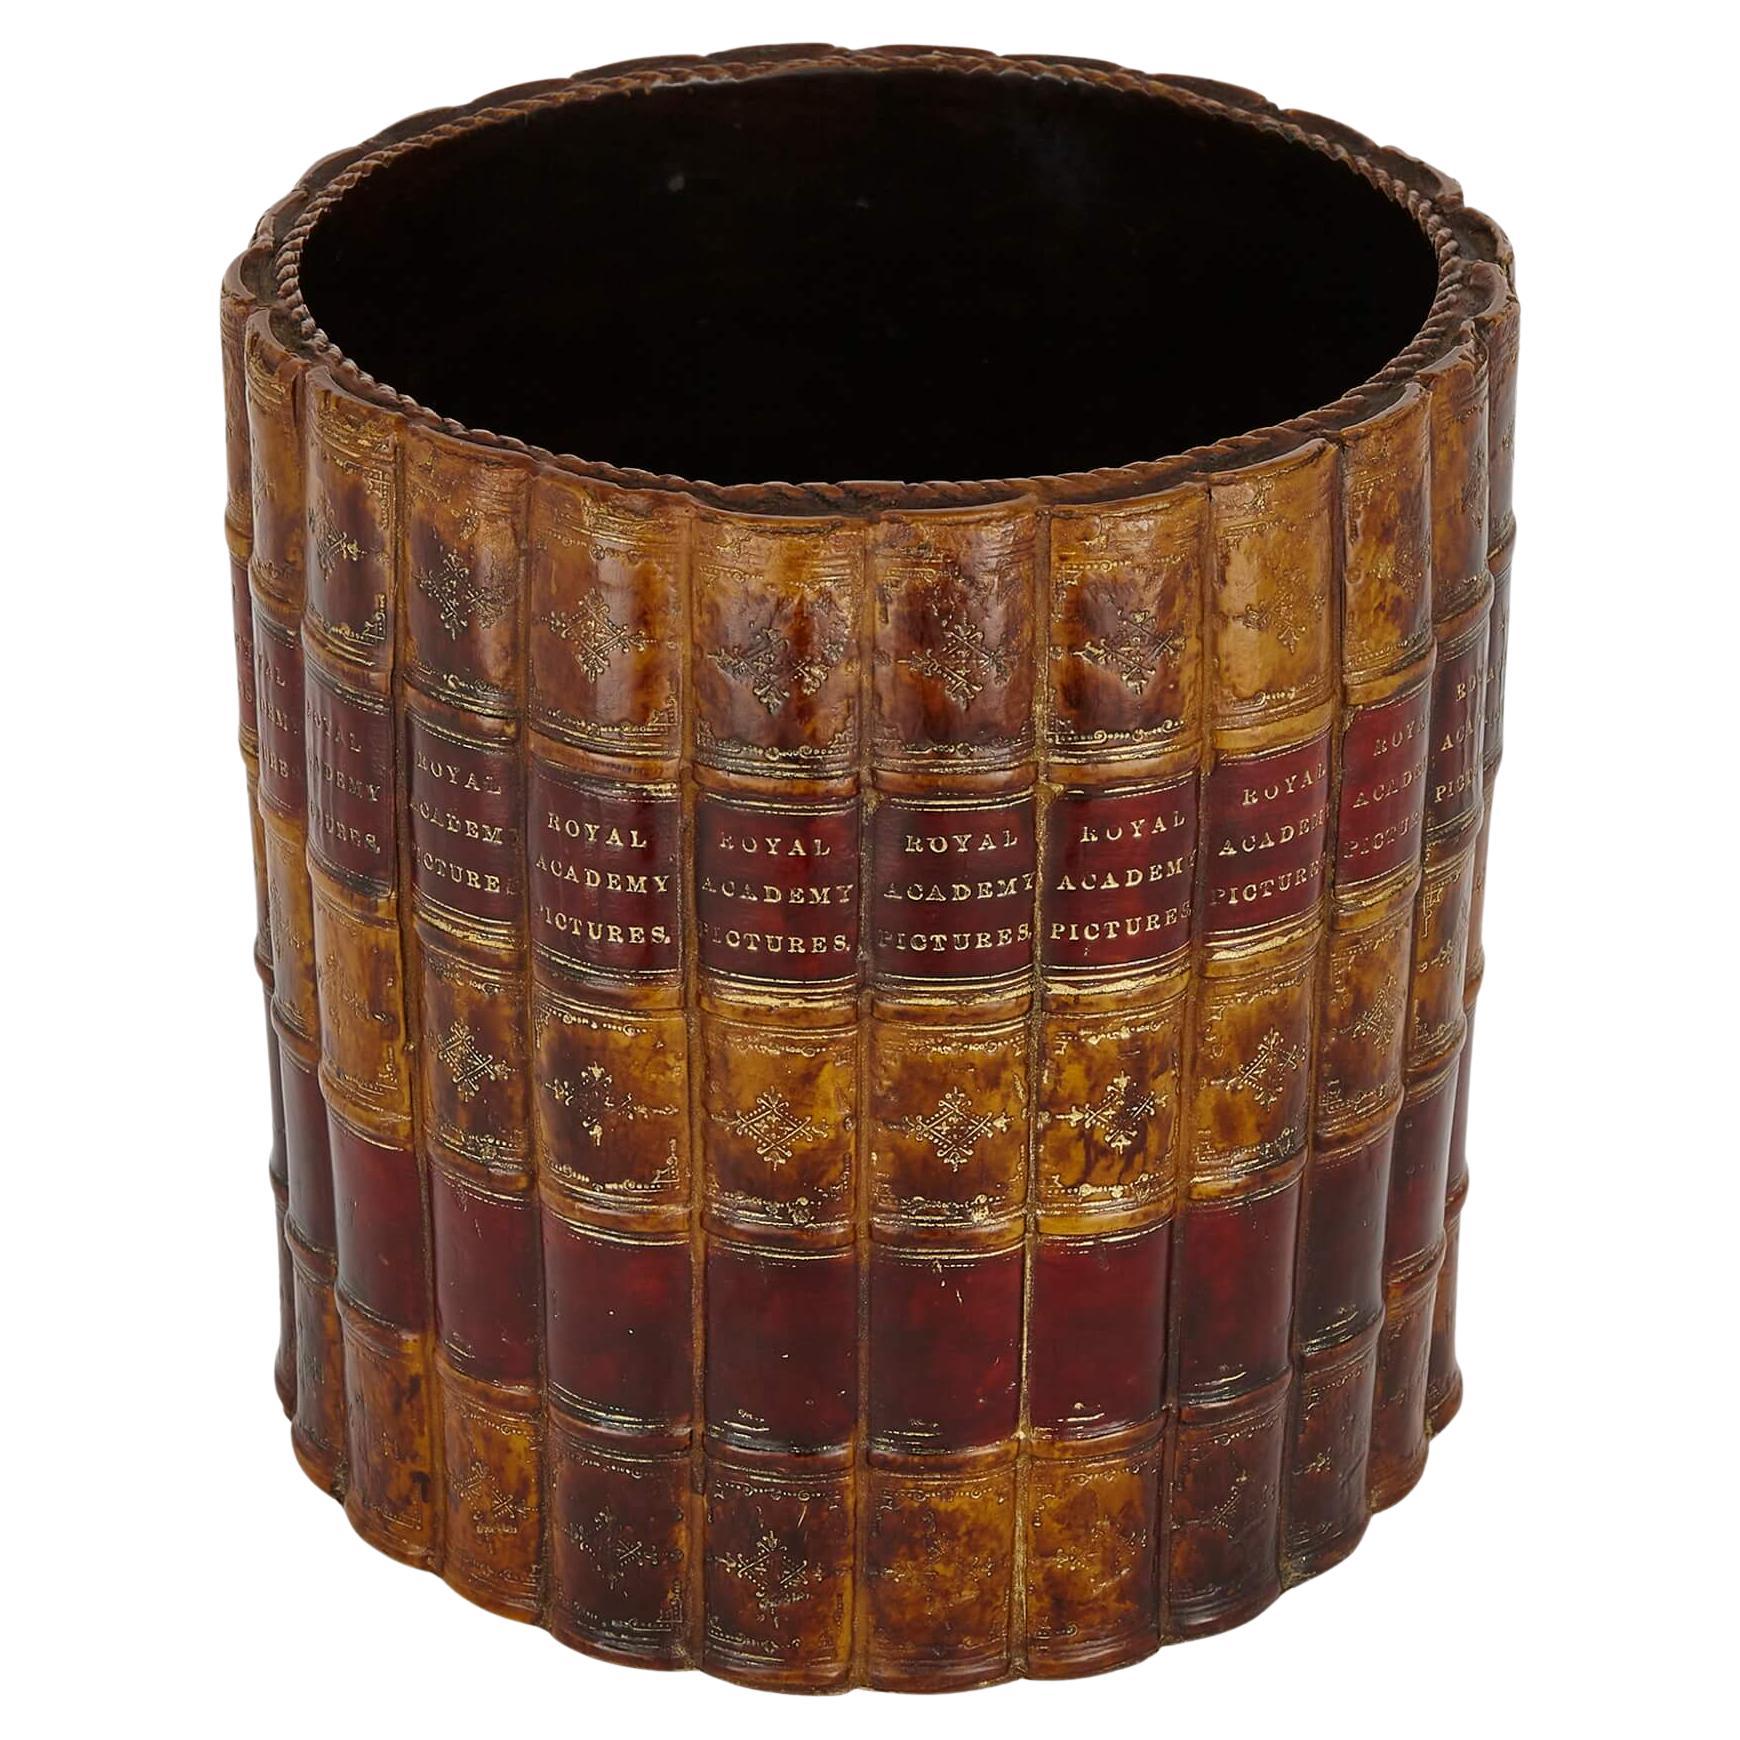 Lackierter, edwardianischer Papierkorb im edwardianischen Stil, neuartig, mit Buchrücken